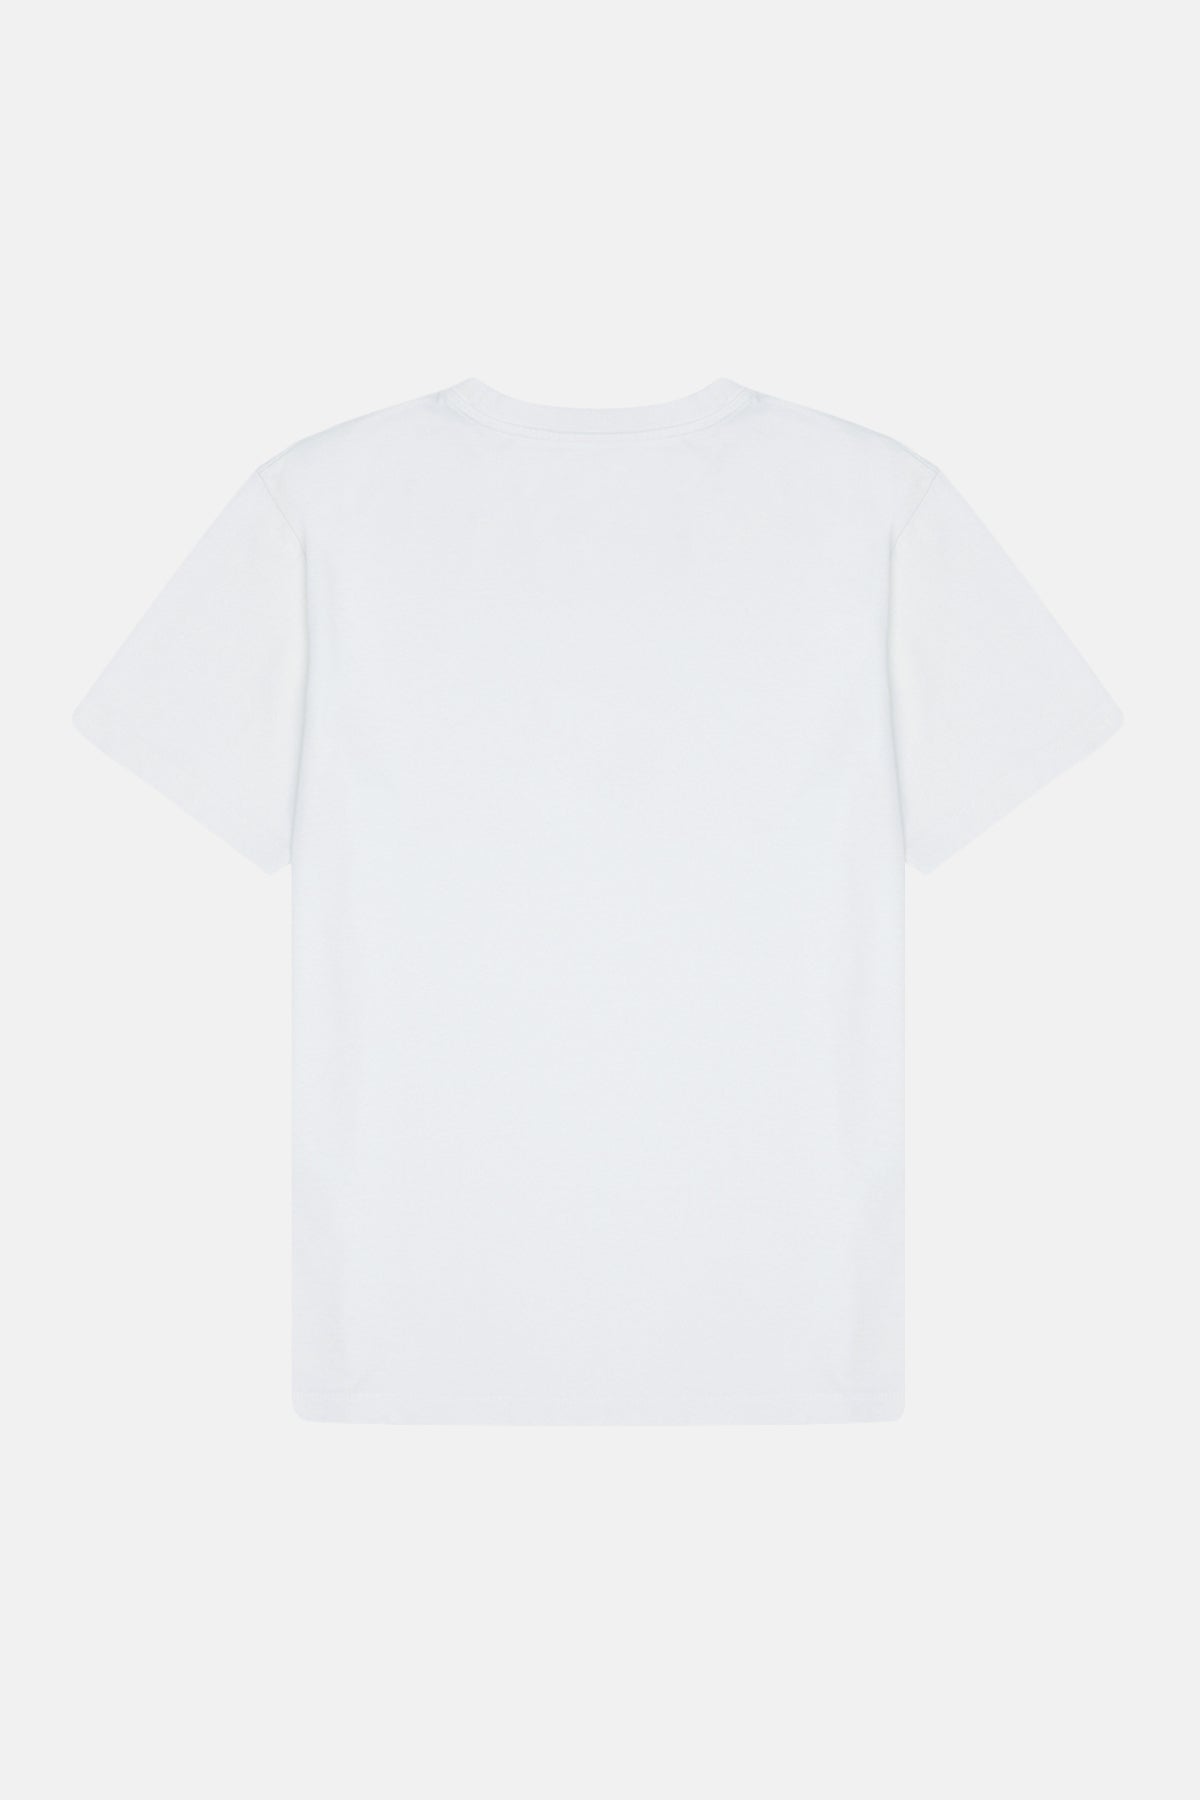 İmparator Penguen Light-Weight T-shirt - Beyaz